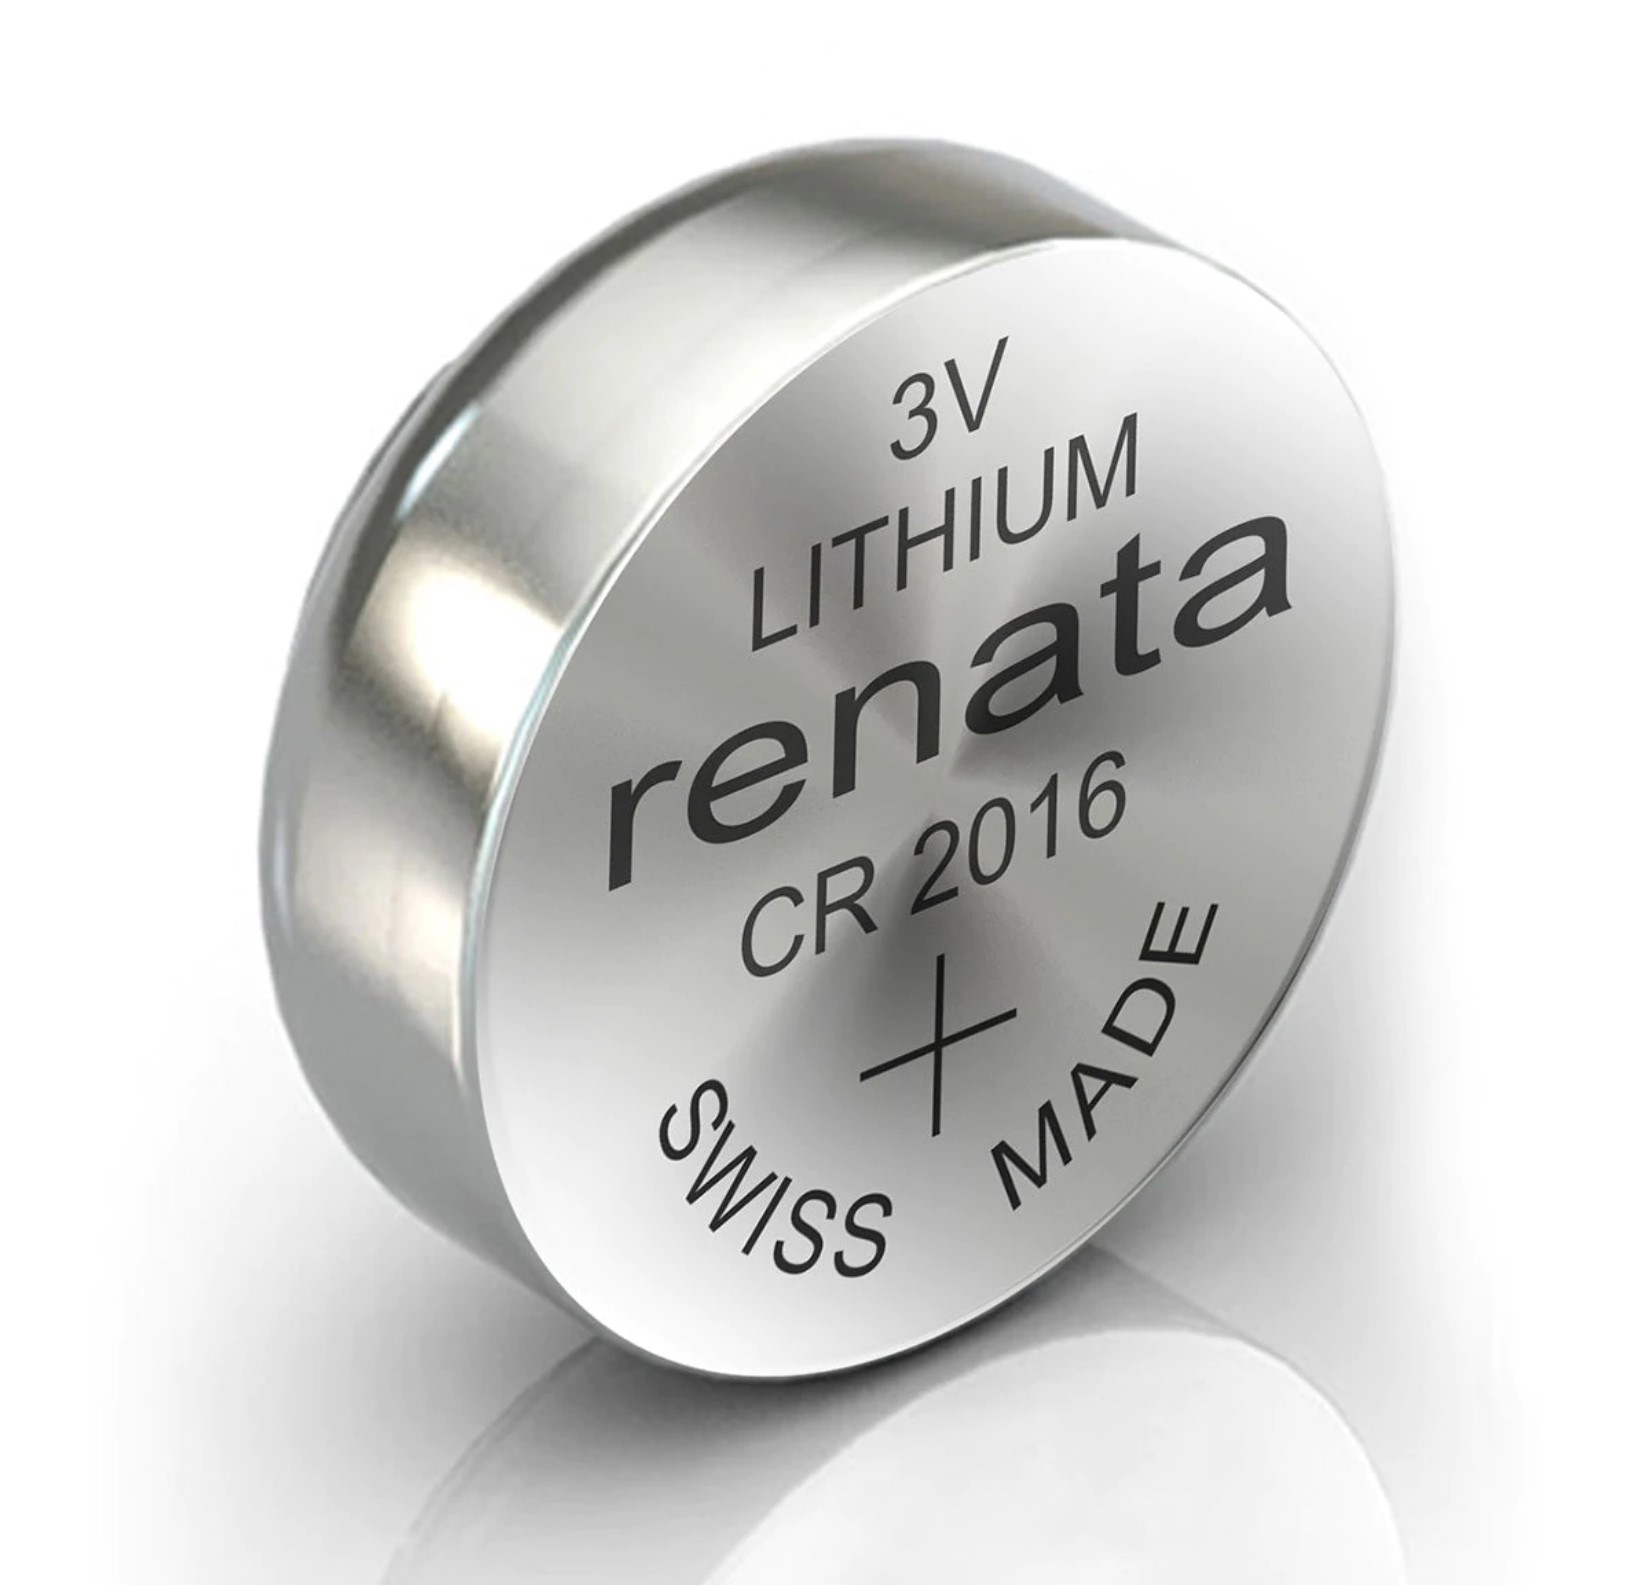 Knoflíková baterie Renata CR2016